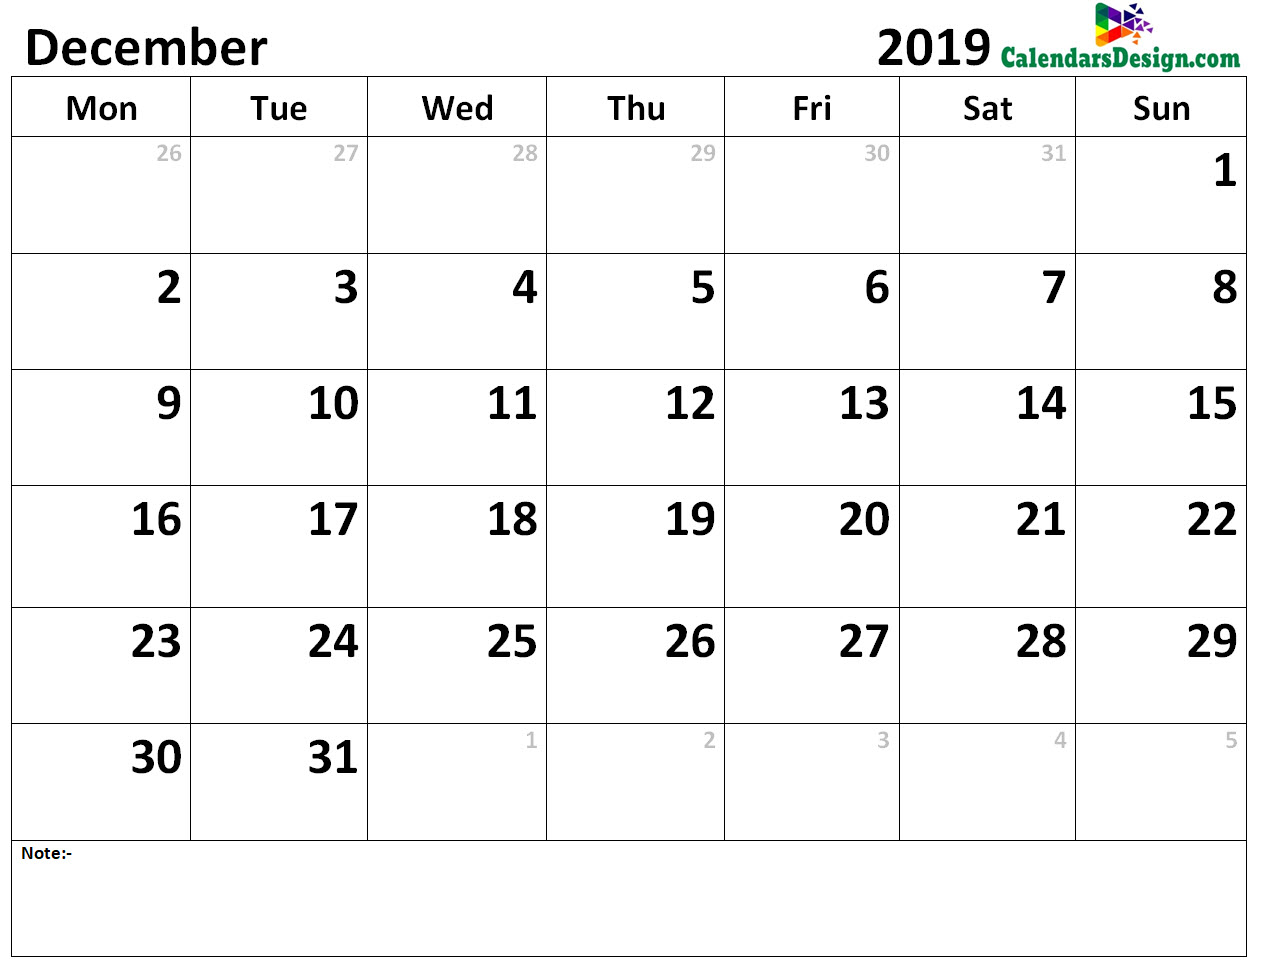 Calendar for December 2019